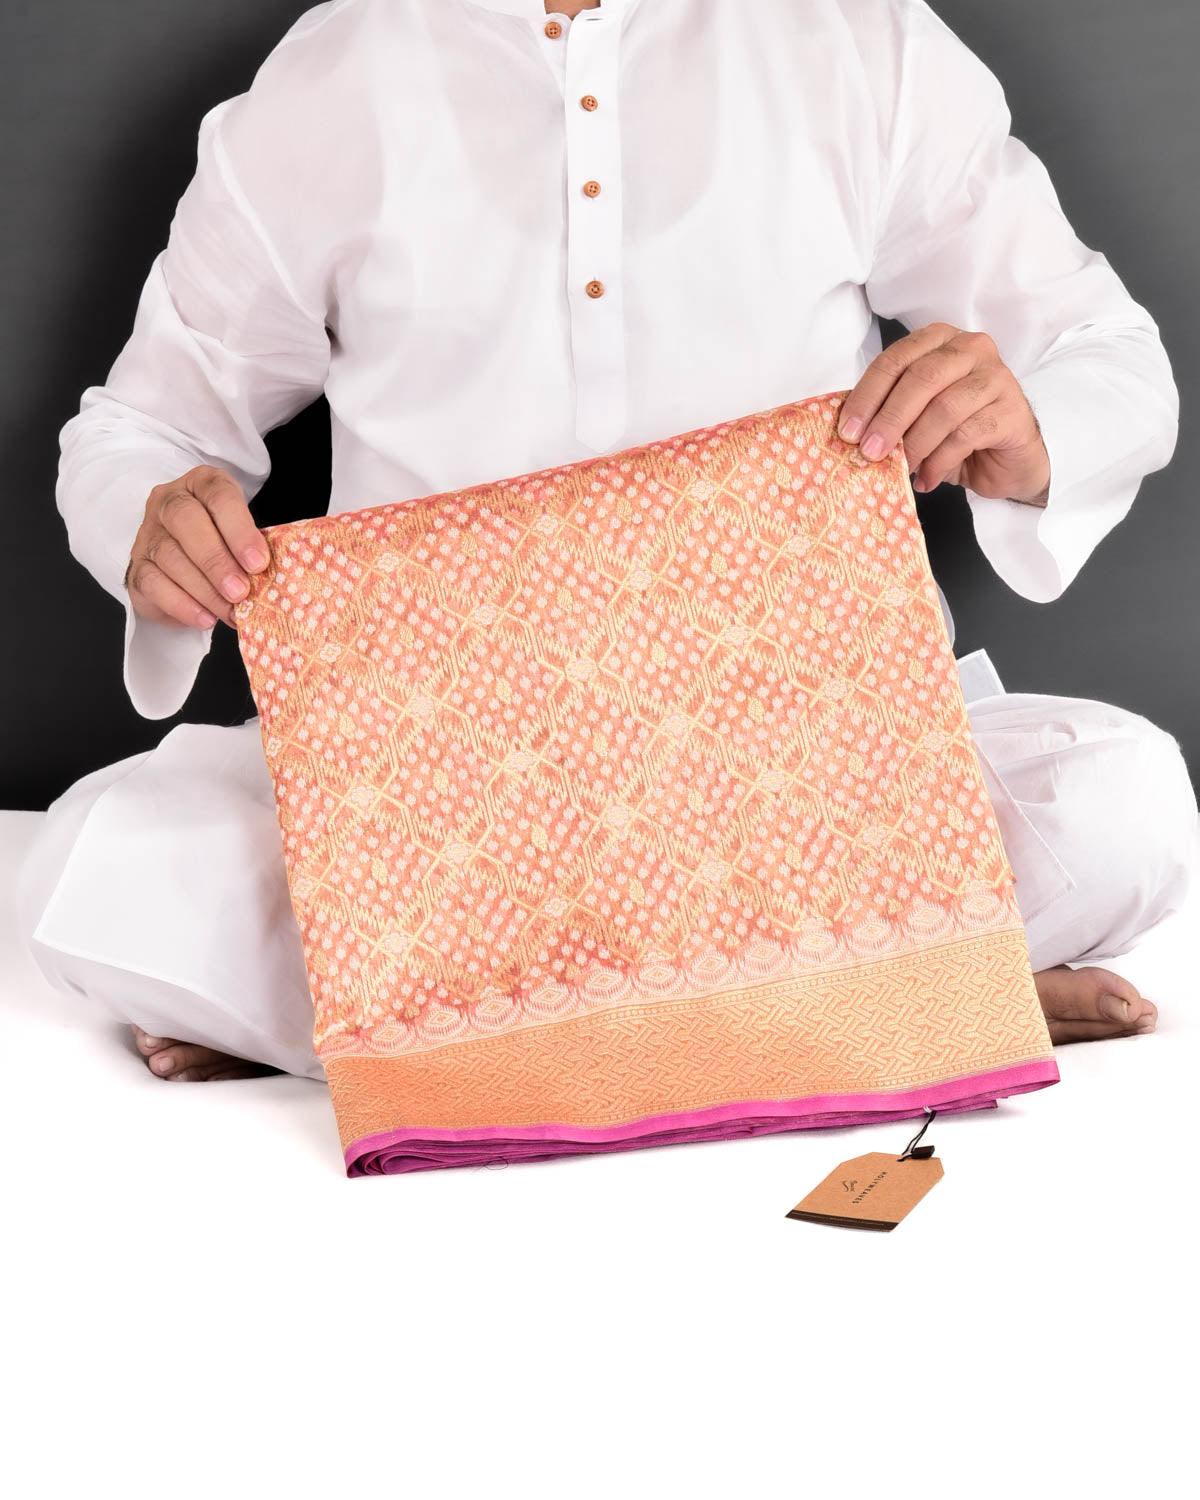 Metallic Pink Banarasi Resham & Gold Zari Gharchola Cutwork Brocade Handwoven Kora Tissue Saree - By HolyWeaves, Benares